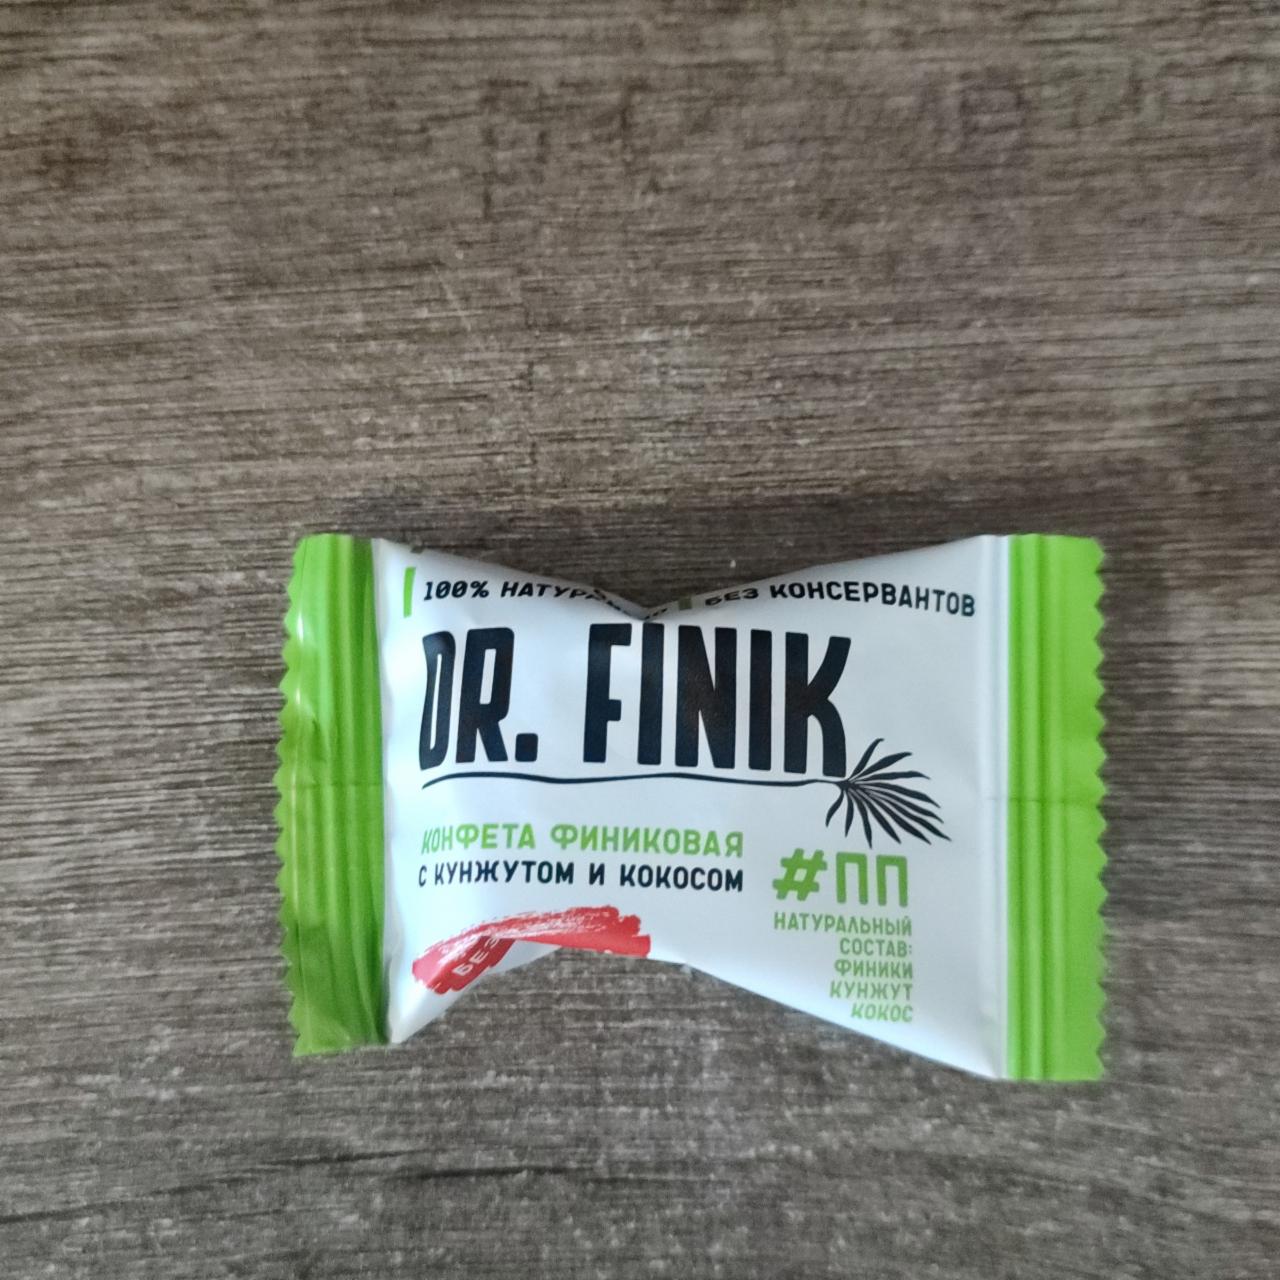 Фото - конфеты финиковые с кунжутом и кокосом DR. FINIK